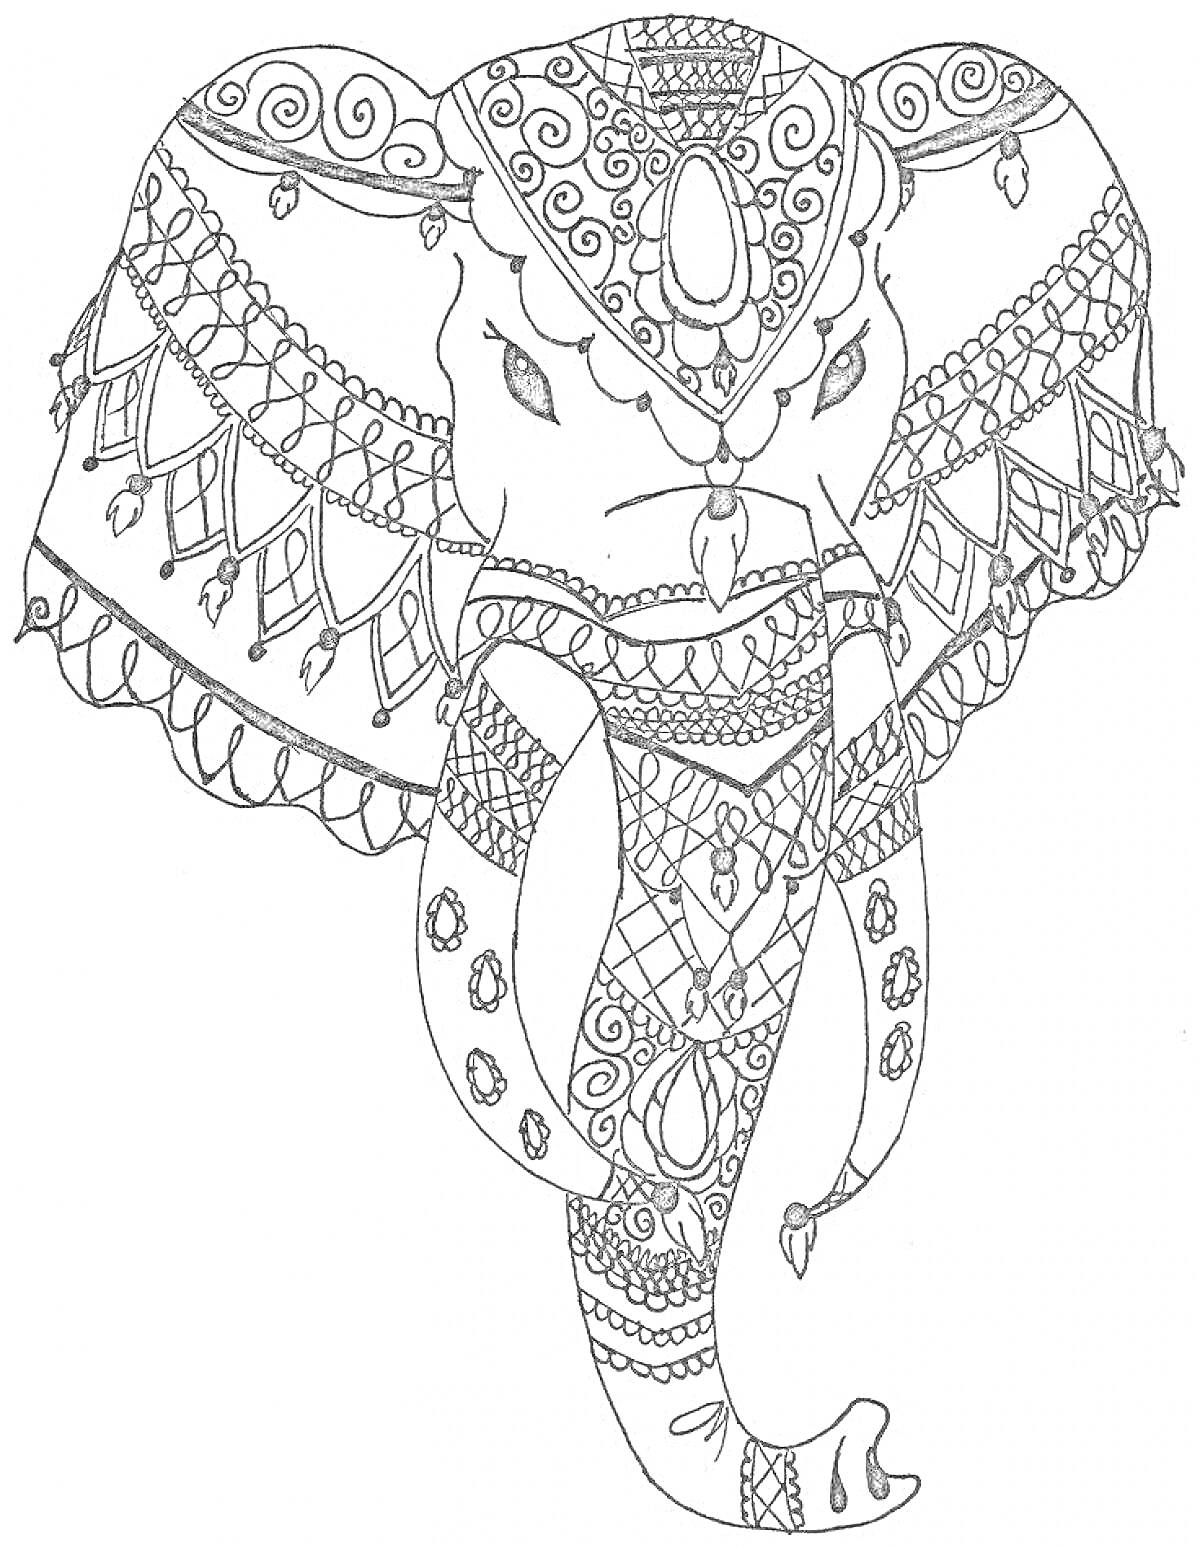 Раскраска Антистресс раскраска с изображением головы слона, украшенной орнаментами, узорами и декоративными элементами.